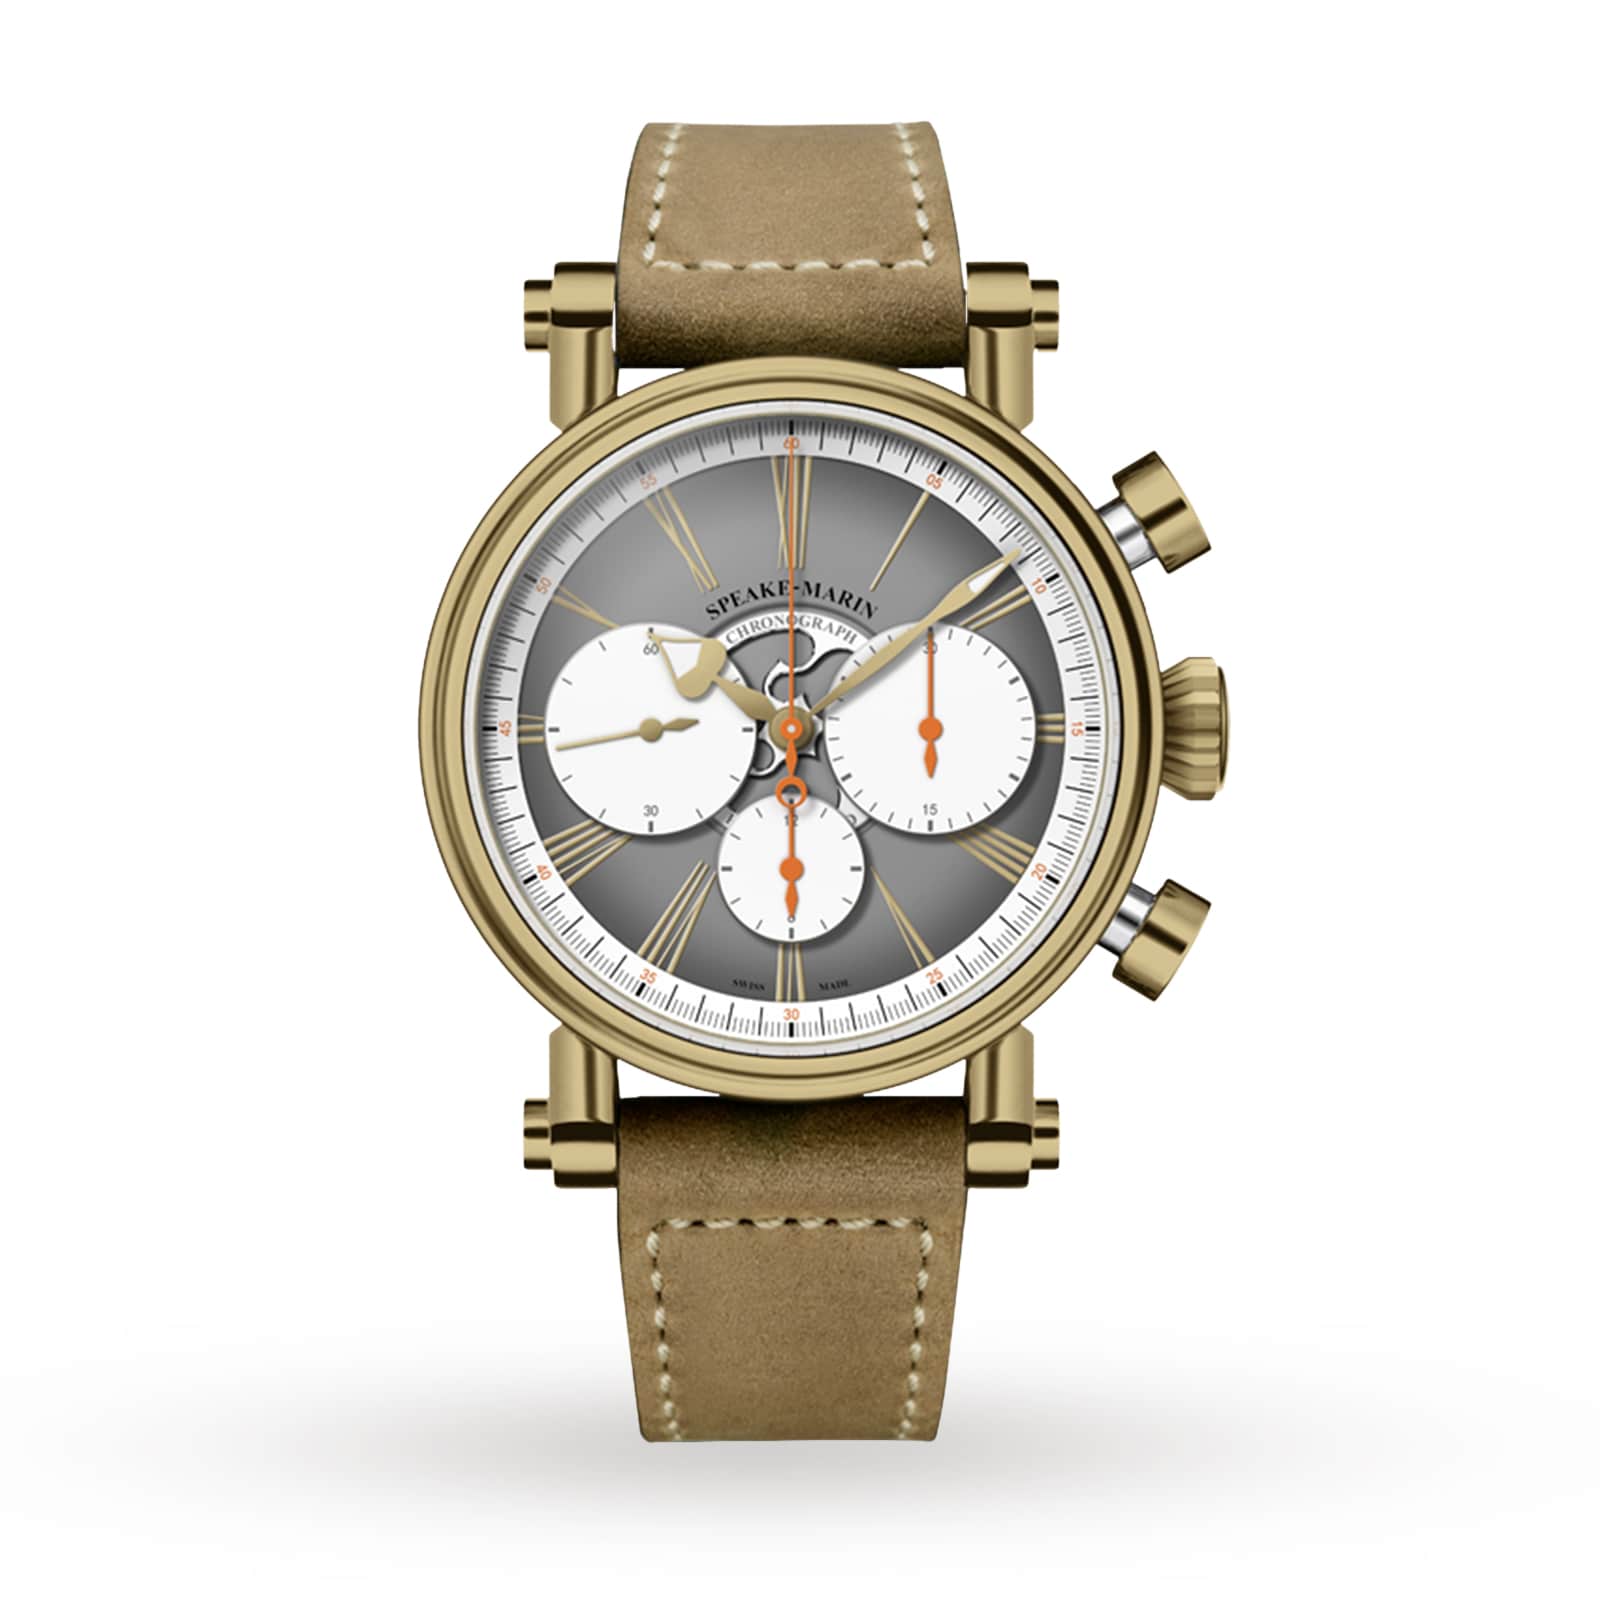 Haute Speake-Marin Bronze 42mm Horlogerie Watches | US 594208060 London Switzerland Chronograph Of